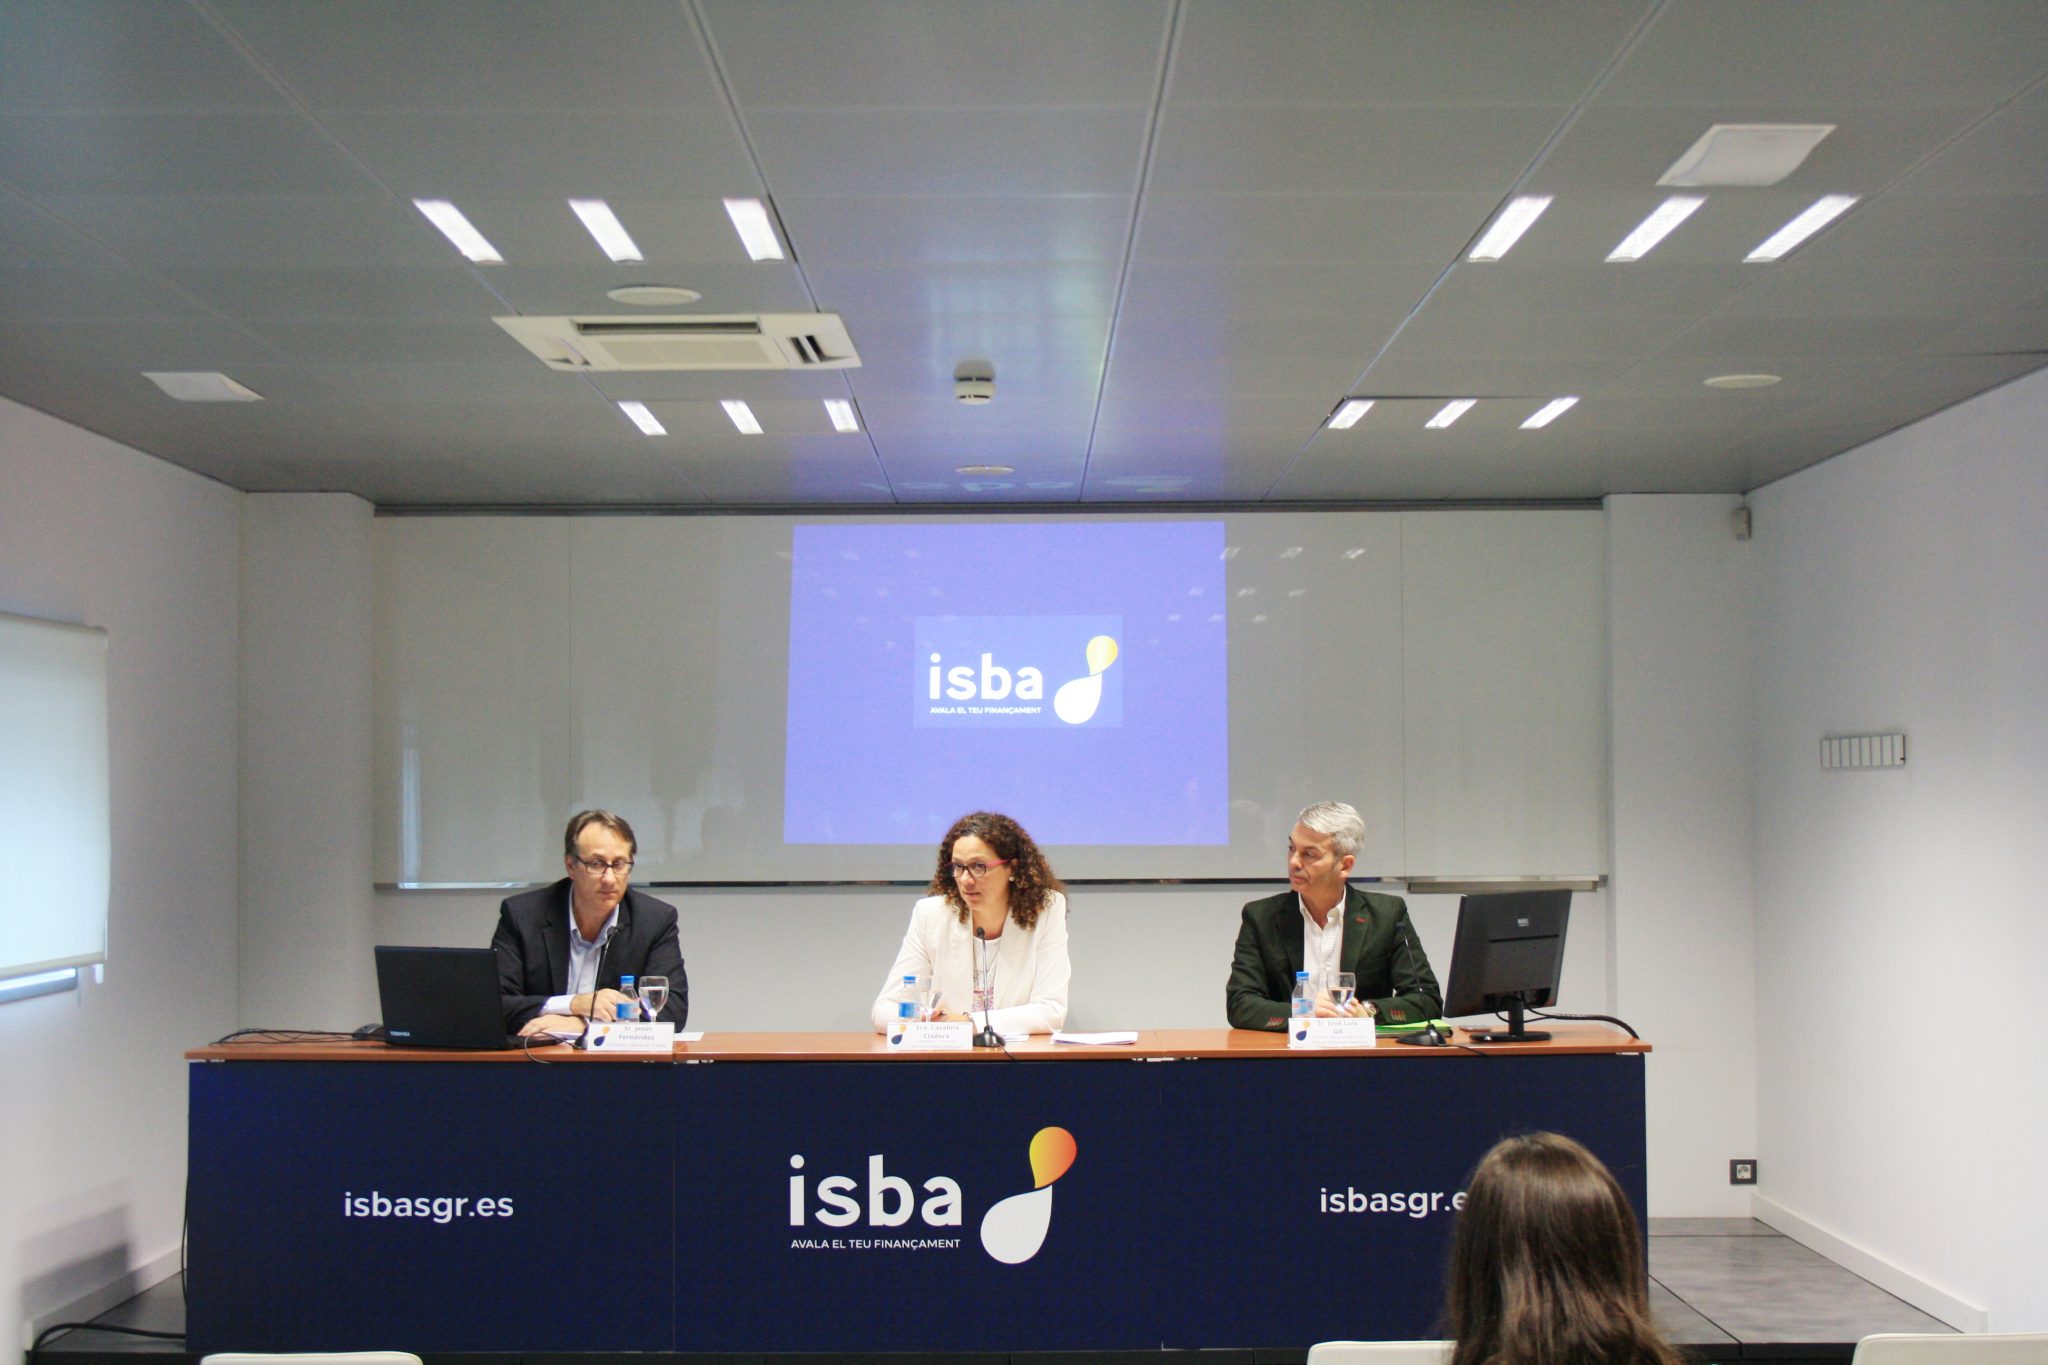 ISBA avala un 39% más de operaciones que el año anterior, destacando el fuerte incremento de inversión para innovación tecnológica